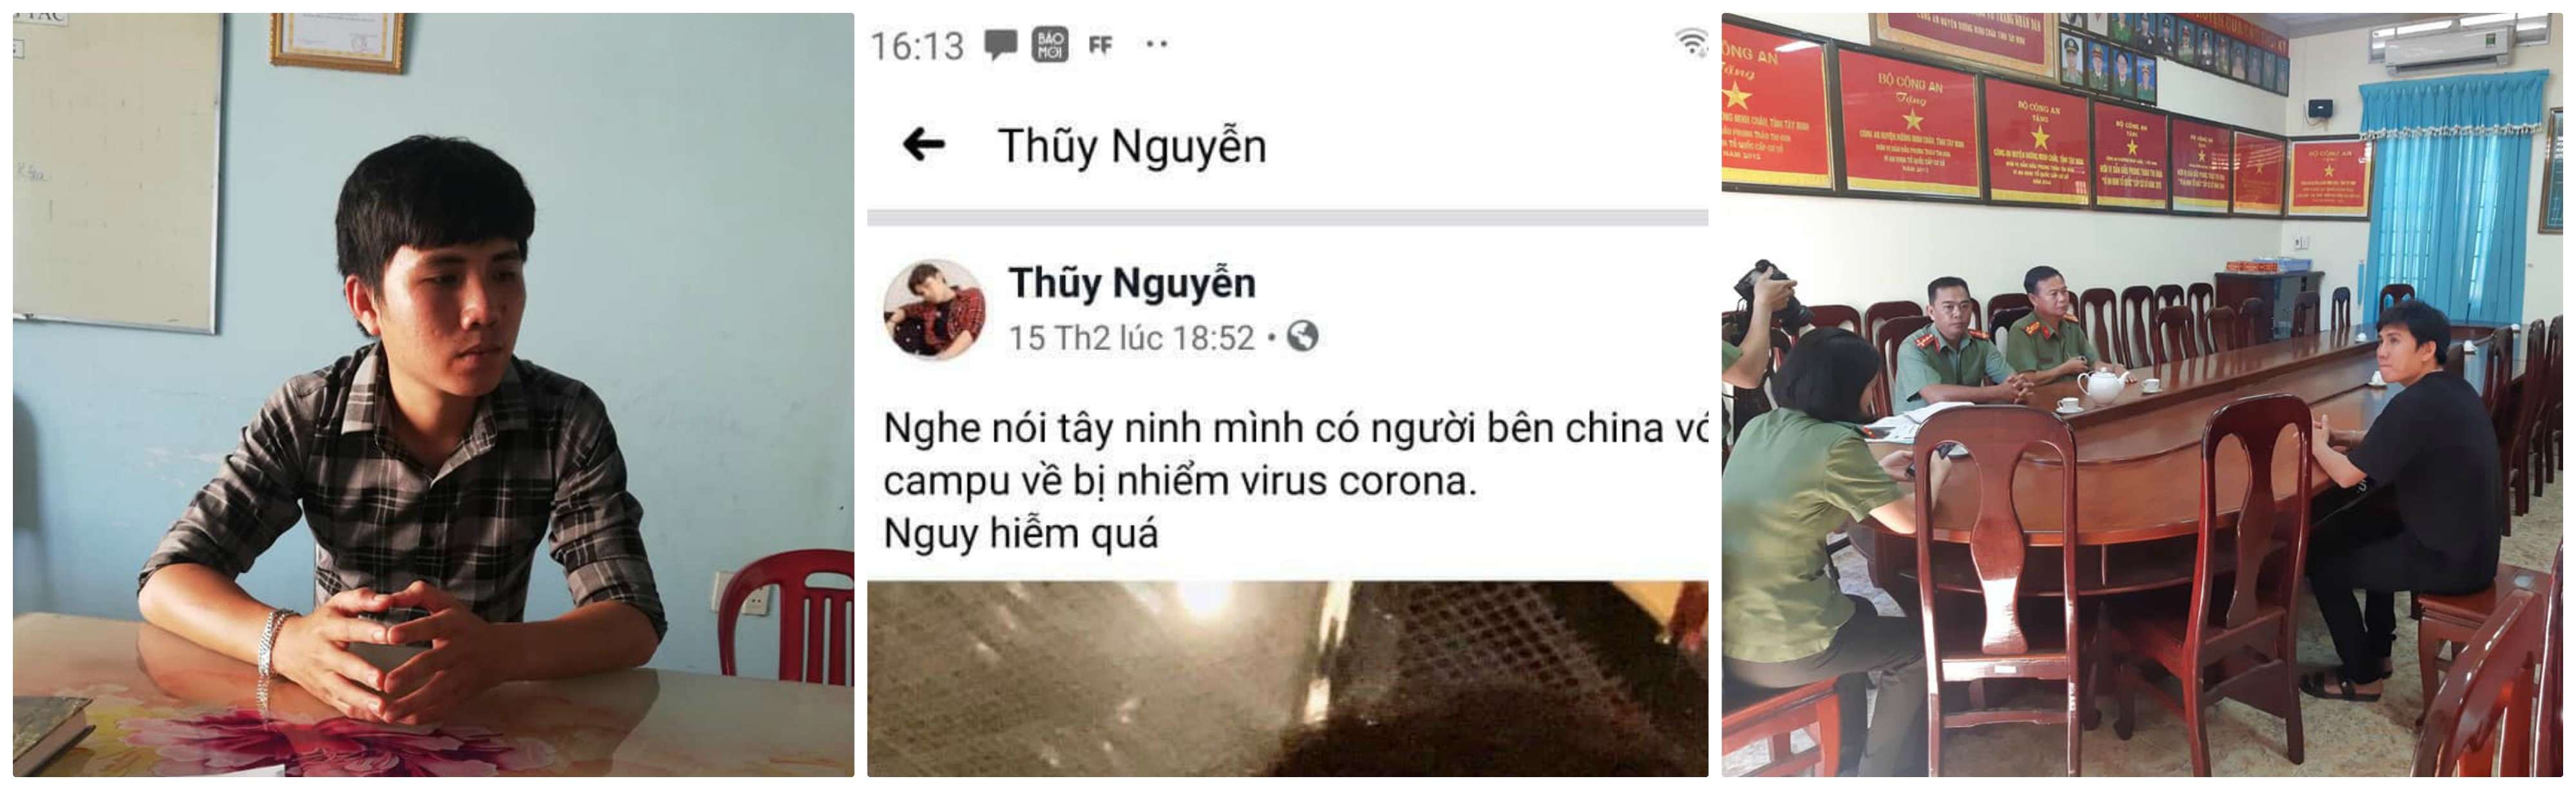 Công an huyện Dương Minh Châu xử phạt vi phạm hành chính về hành vi cung cấp nội dung thông tin sai sự thật về dịch bệnh Corona (Covid-19) trên mạng xã hội Facebook